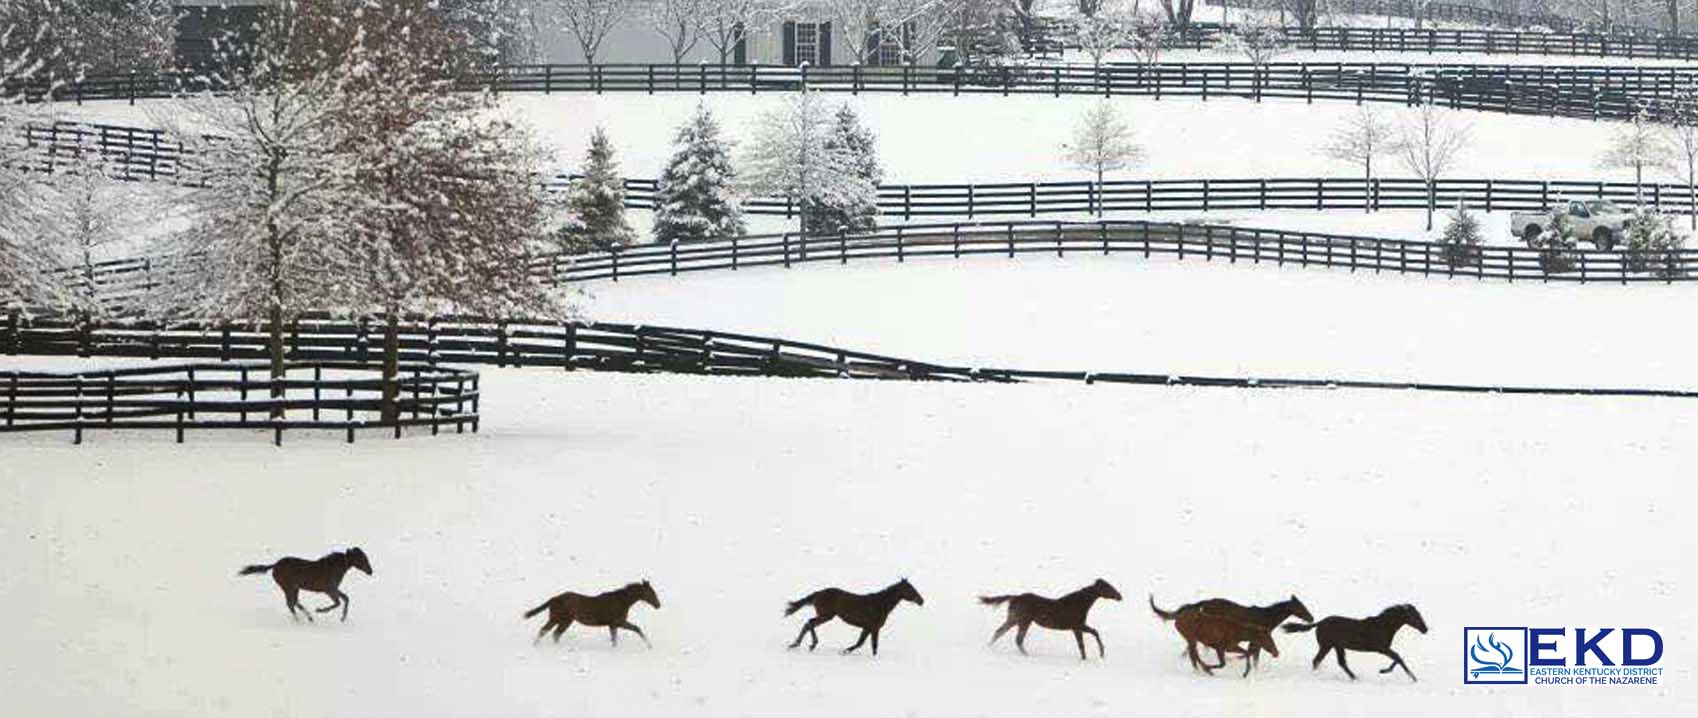 Kentucky Winter.jpg